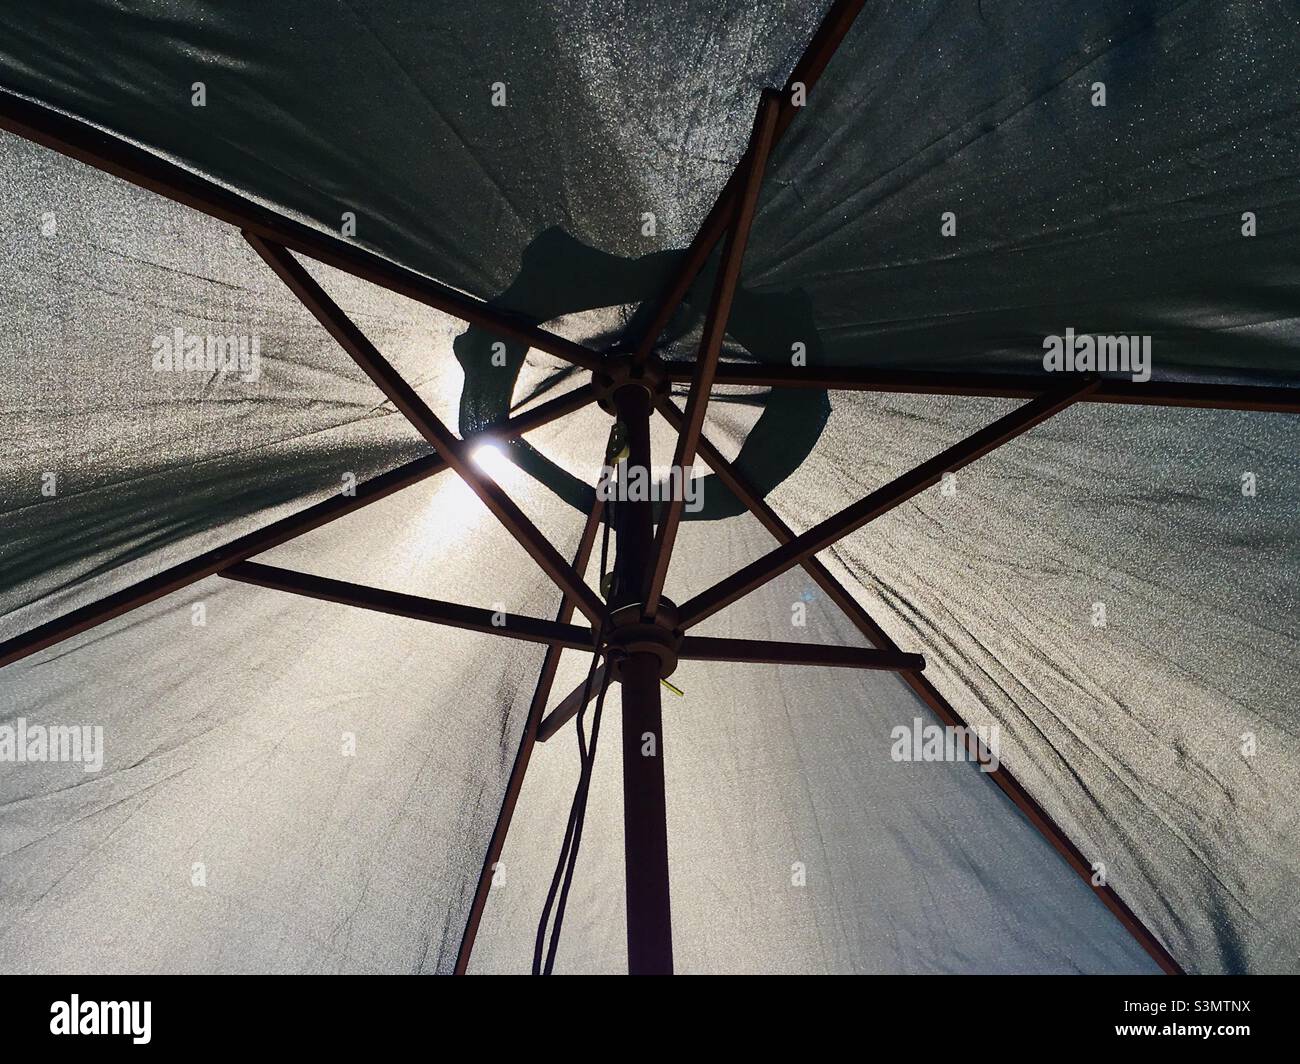 Huge patio umbrella providing shade from the sun Stock Photo